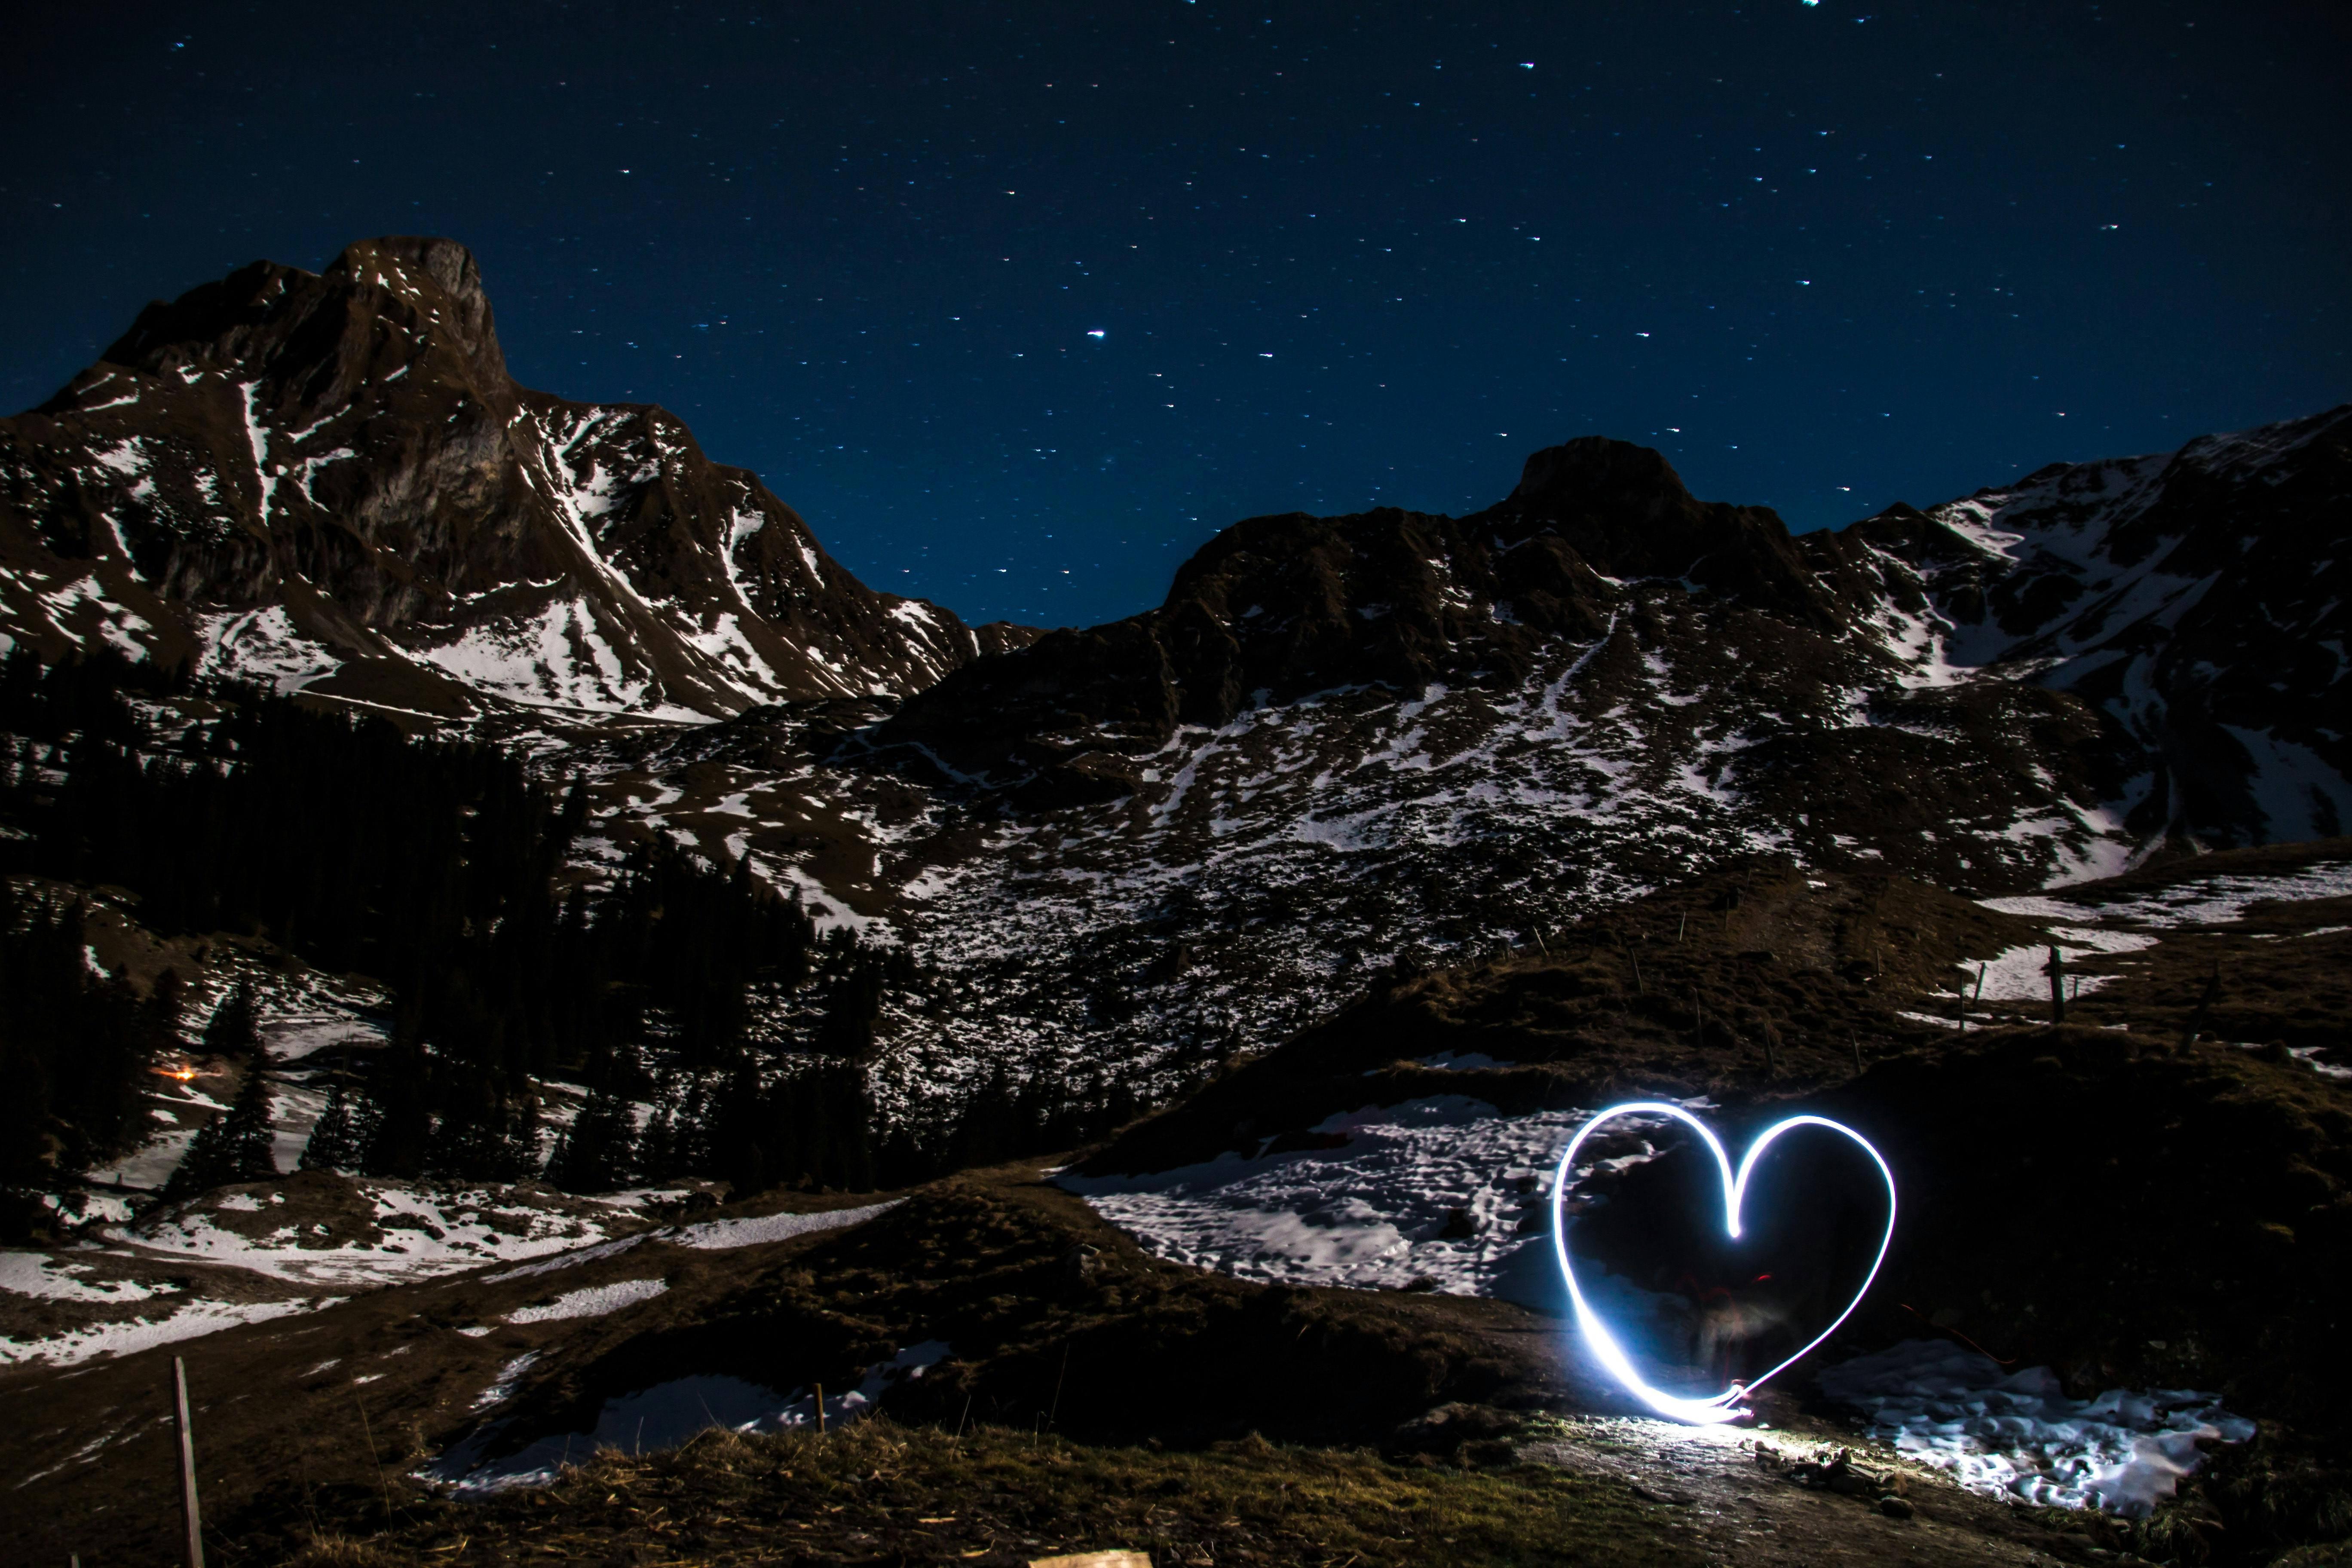 Heart Light And Tundra Mountain Photography Free Stock Photo